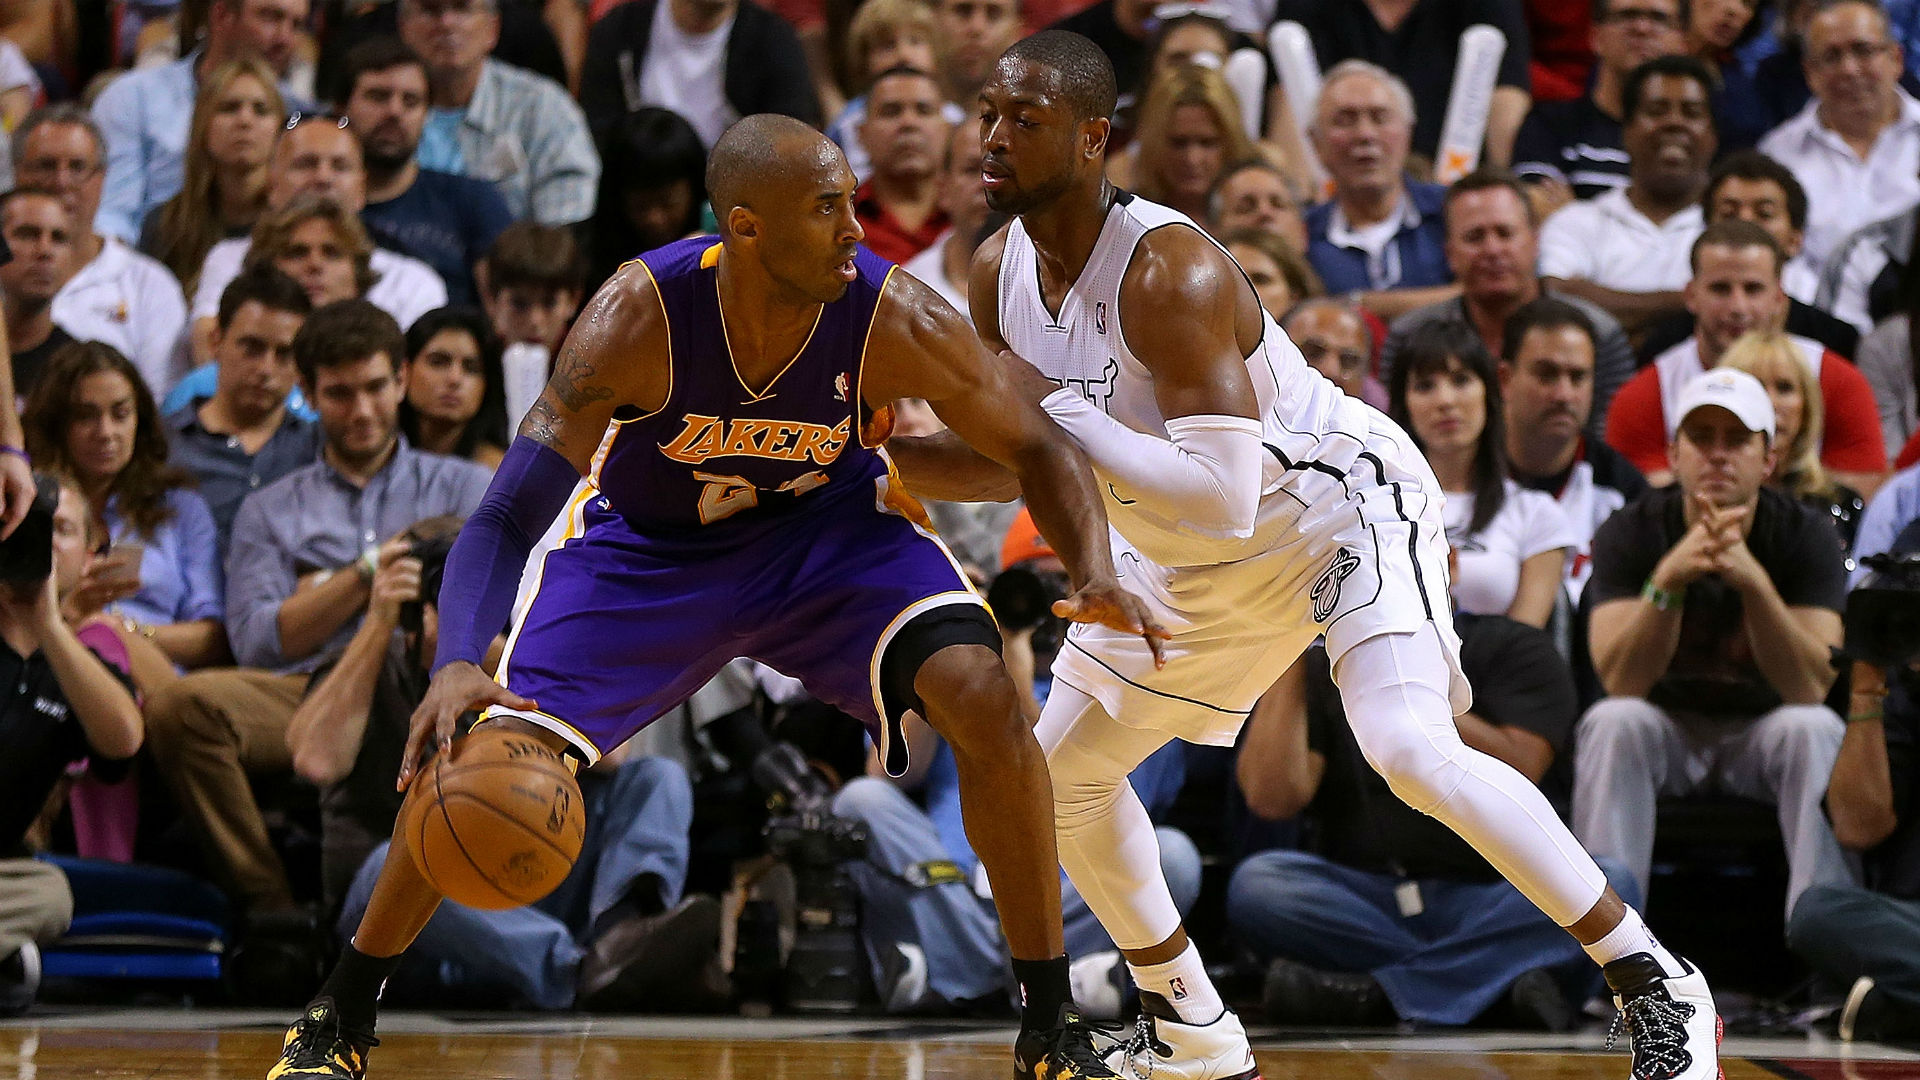 NBA Workhorses: Dwyane Wade, Kobe Bryant and the Top 25 Baddest